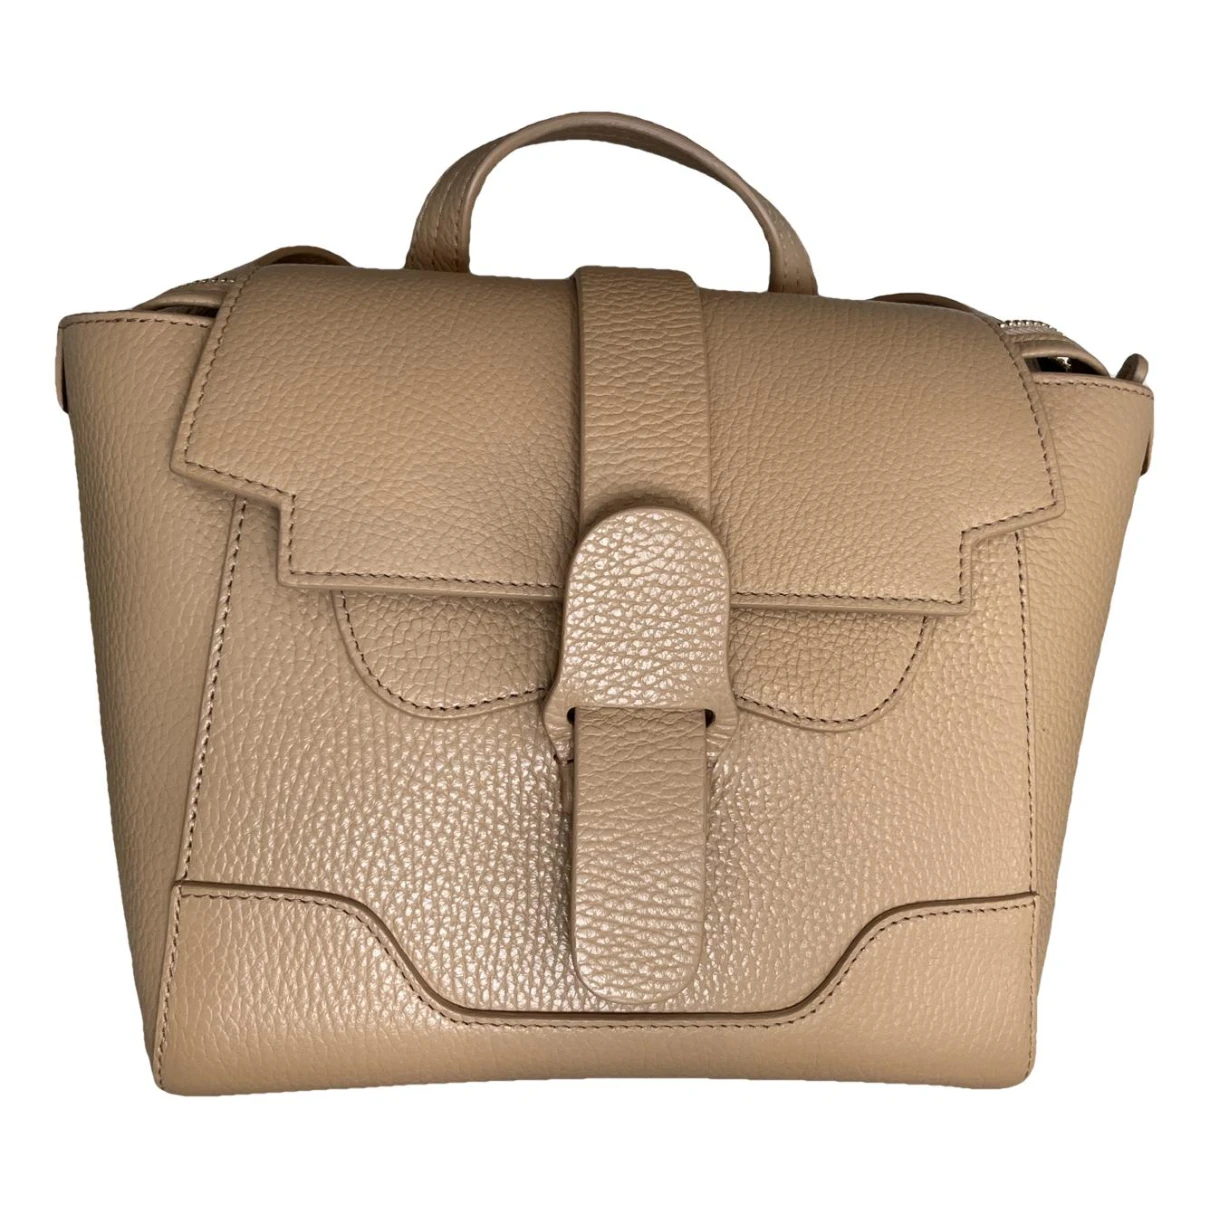 Pre-owned Senreve Leather Handbag In Camel